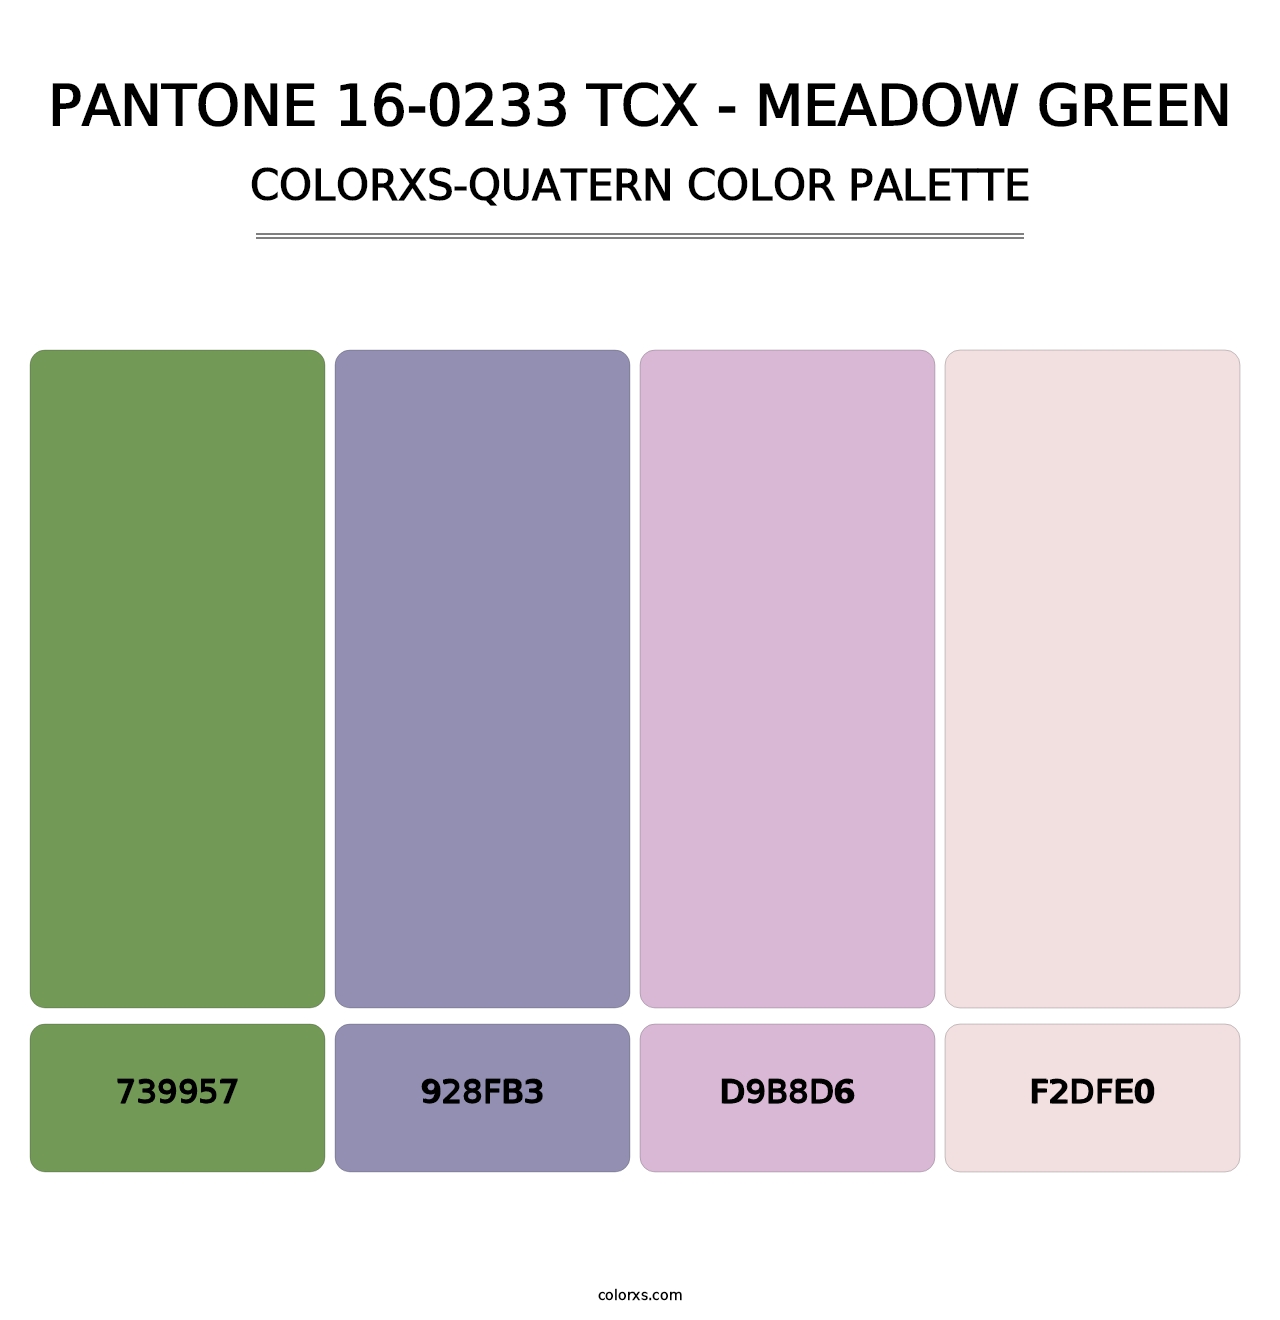 PANTONE 16-0233 TCX - Meadow Green - Colorxs Quatern Palette